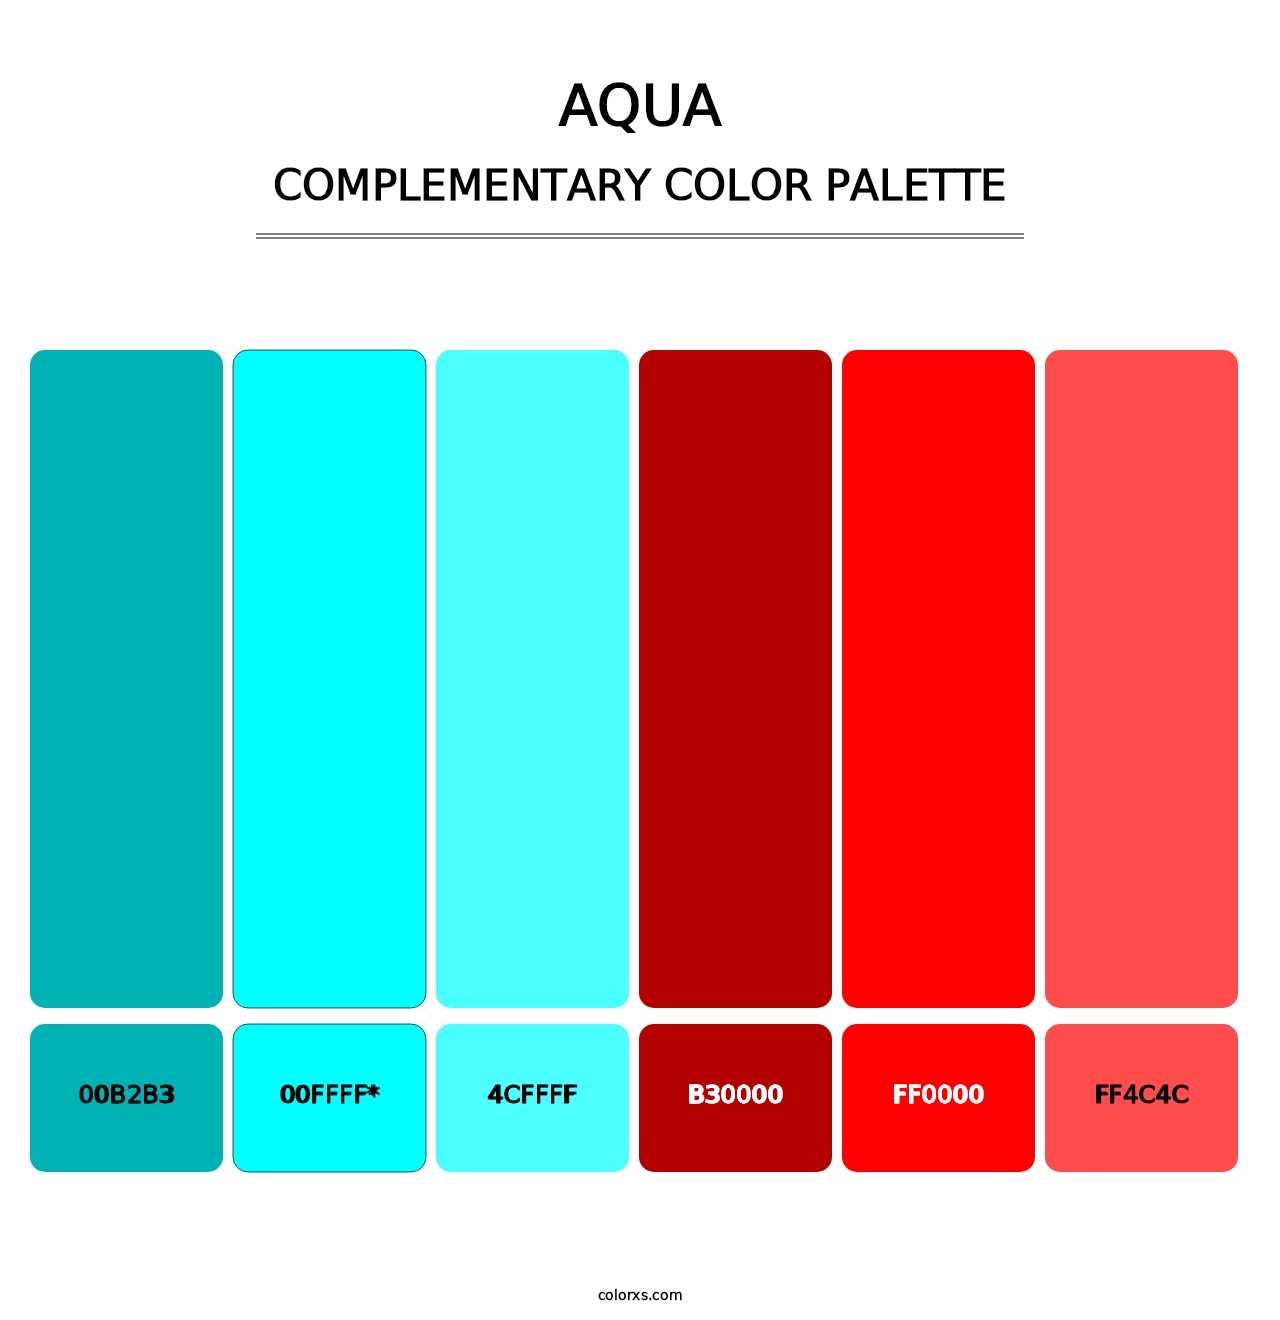 Aqua - Complementary Color Palette